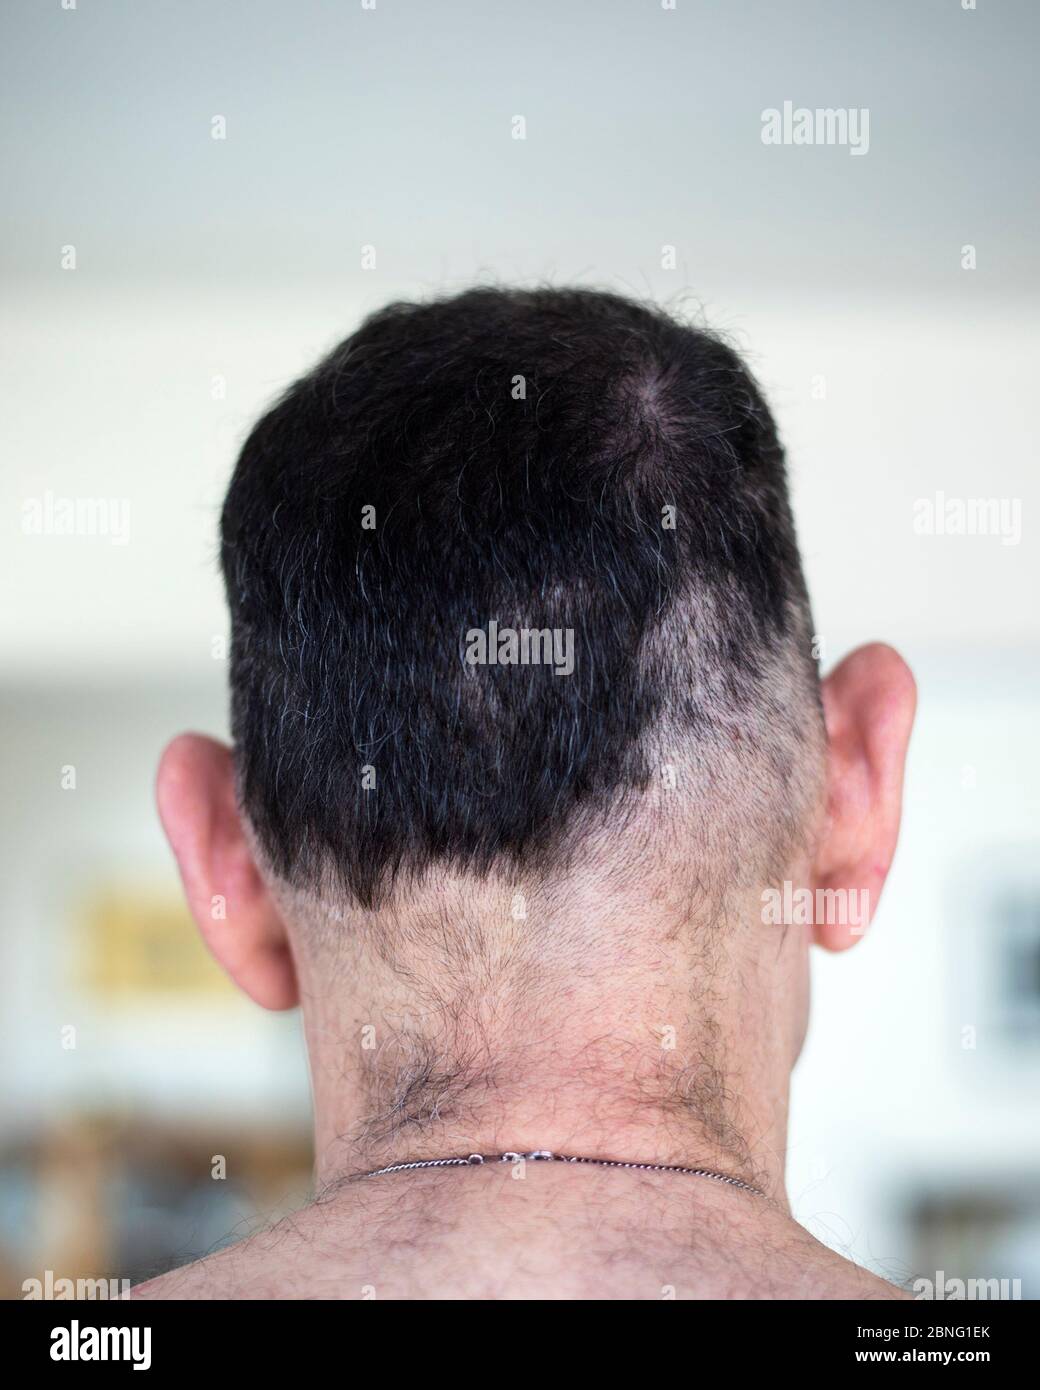 Schlechter Haarschnitt selbst gemacht durch Mann, der während der COVID 19 Pandemie in Isolation zu Hause bleibt. Stockfoto